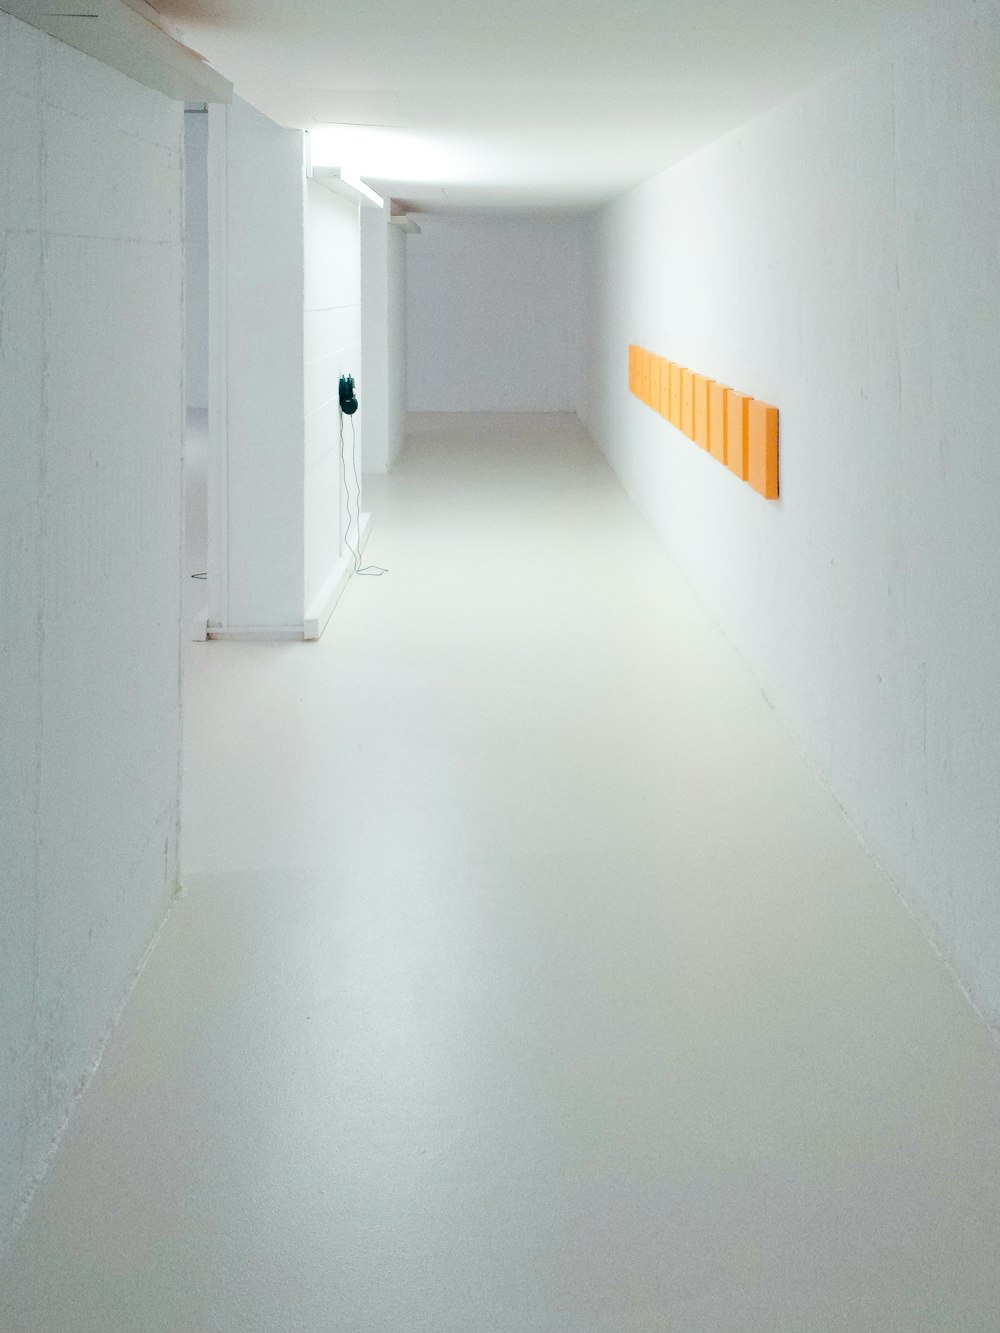 corredor vazio entre paredes brancas